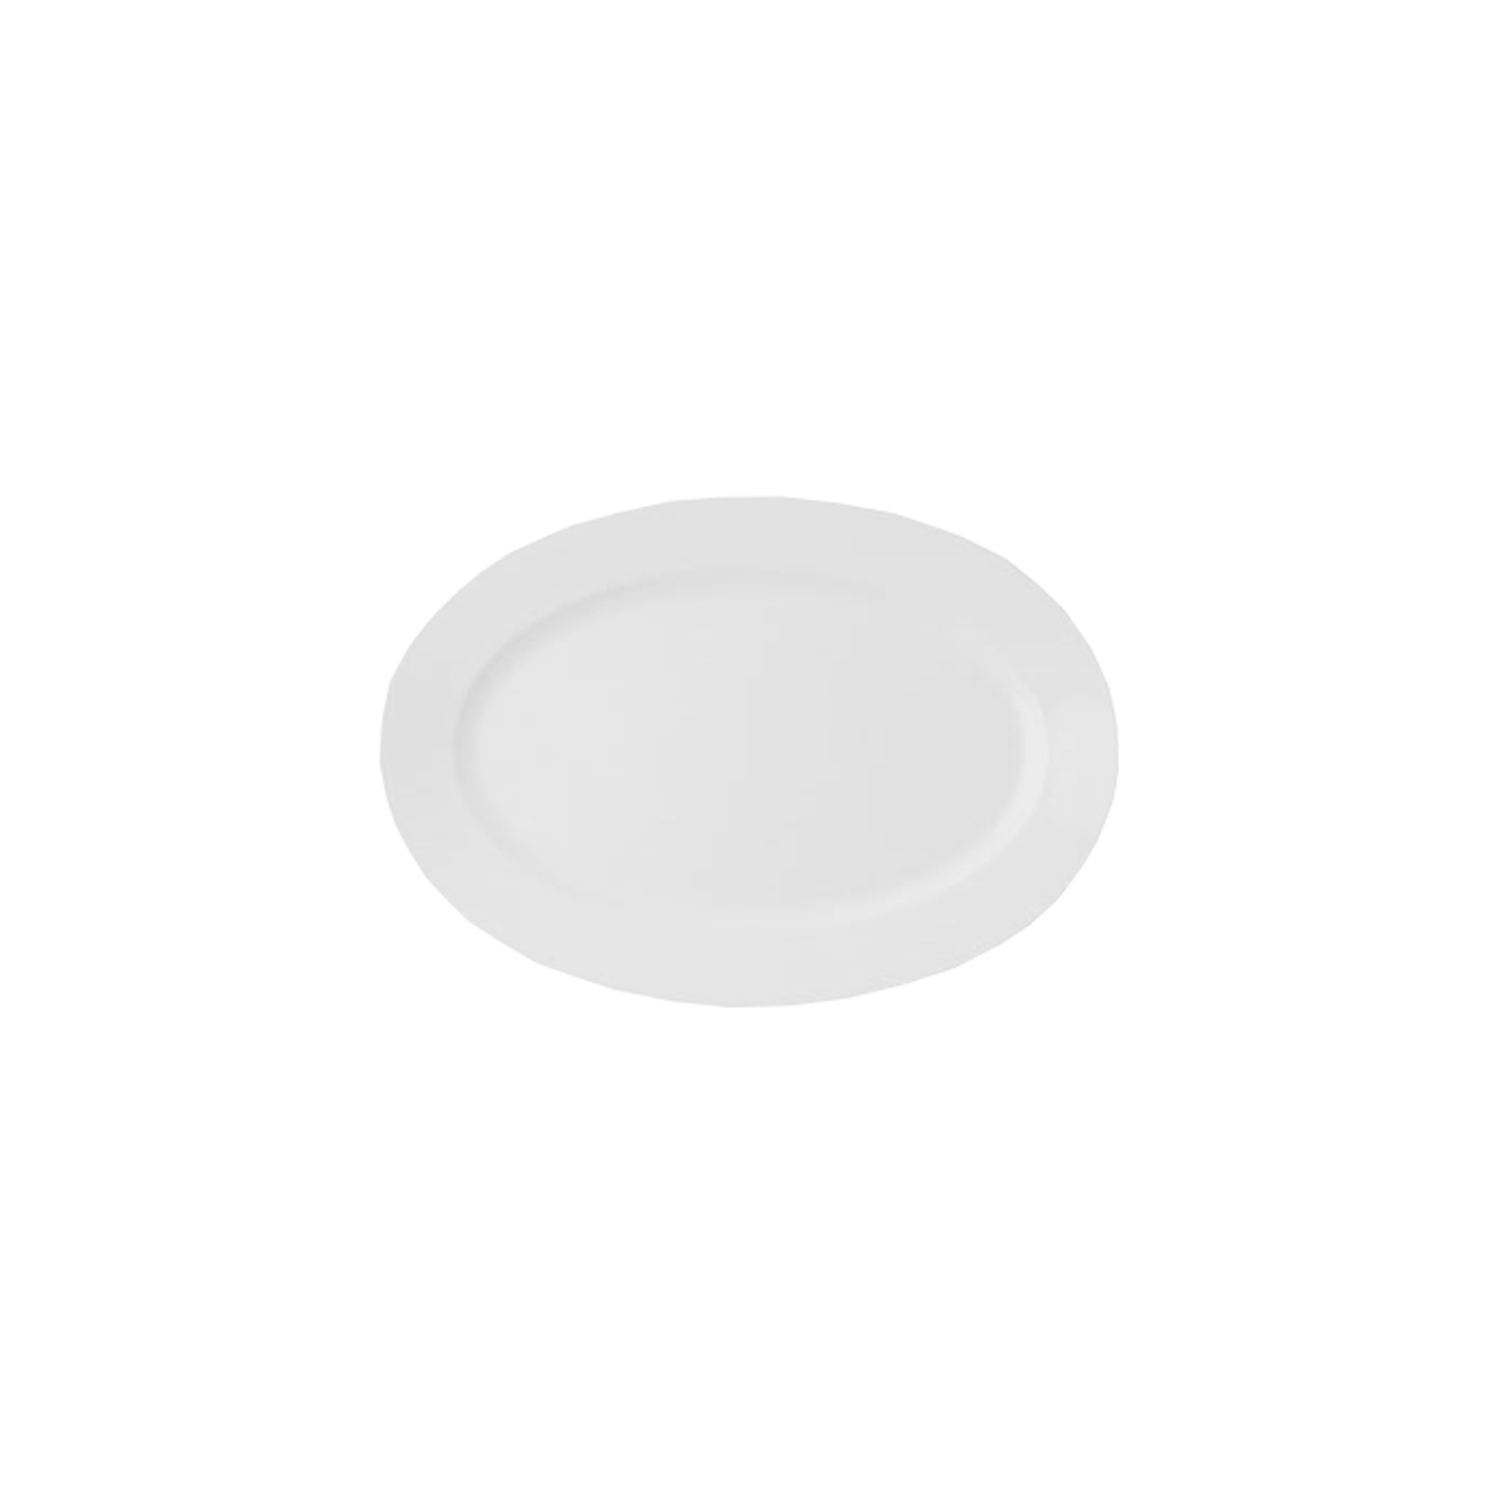 Овальная тарелка RAK Porcelain Banquet 26 см (94068)